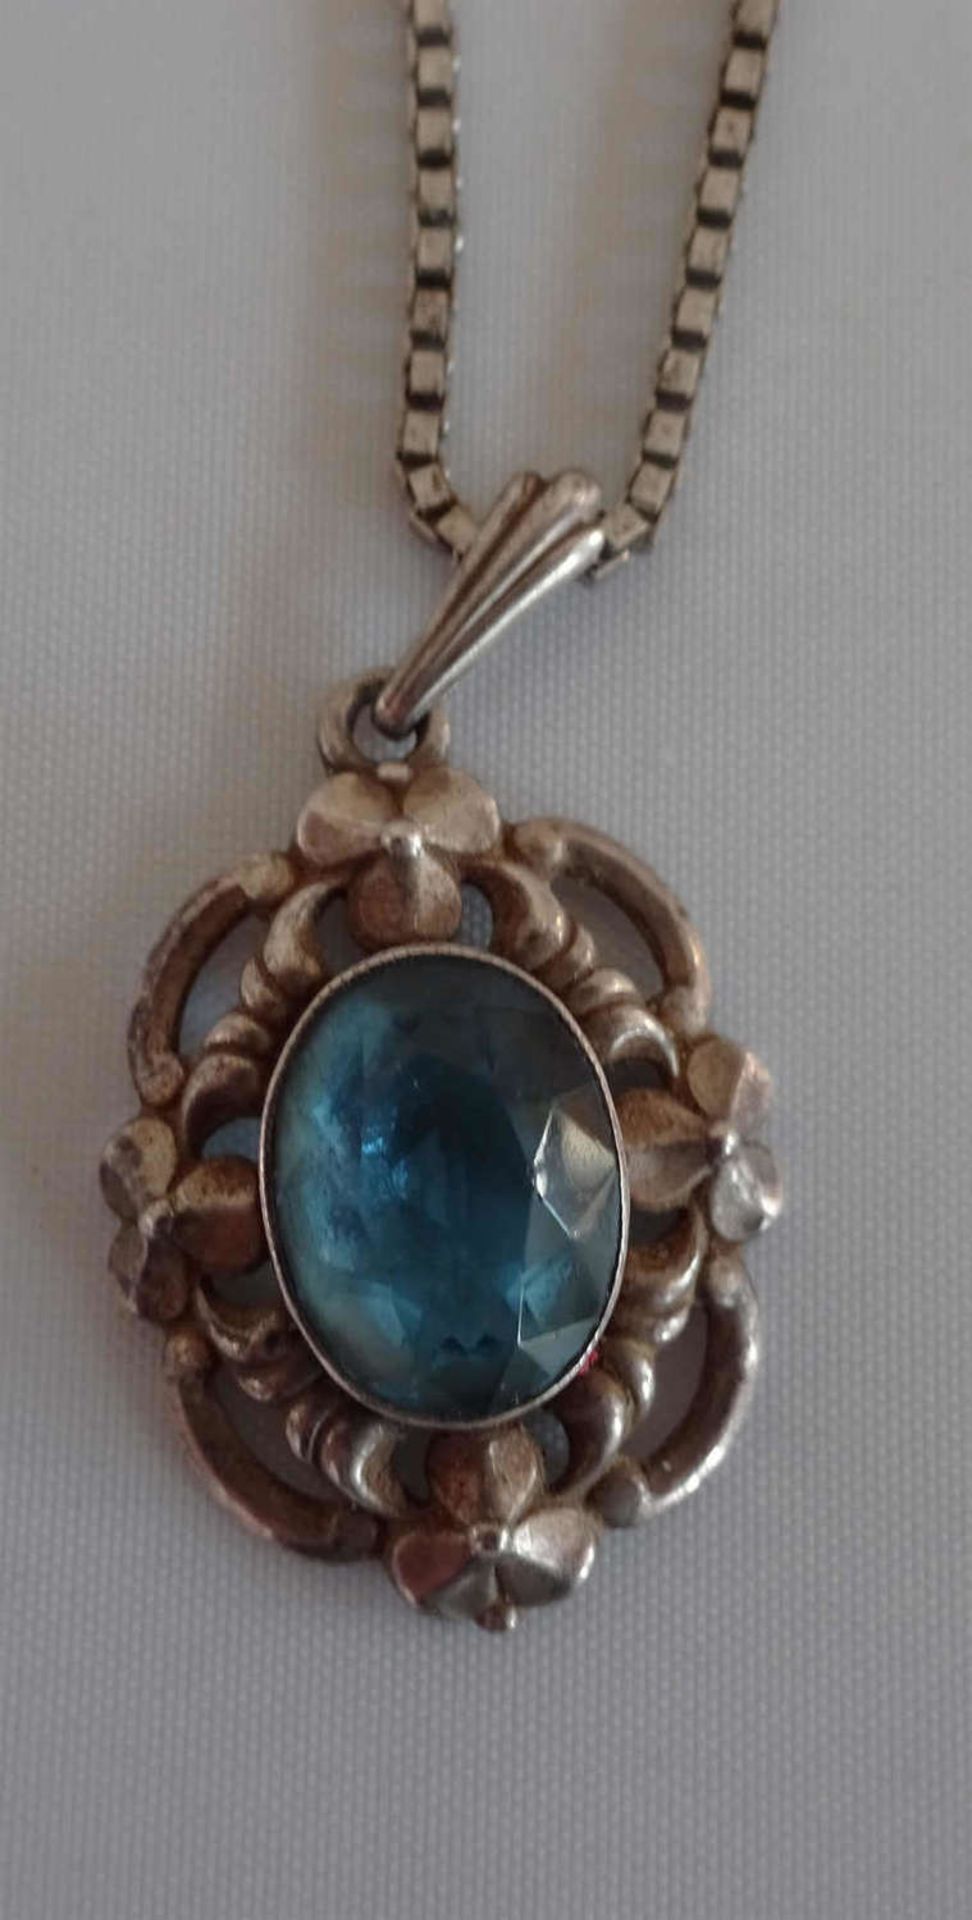 1 Silberkette mit Anhänger, dieser besetzt mit Blautopas, wohl 30er Jahre.1 silver necklace with